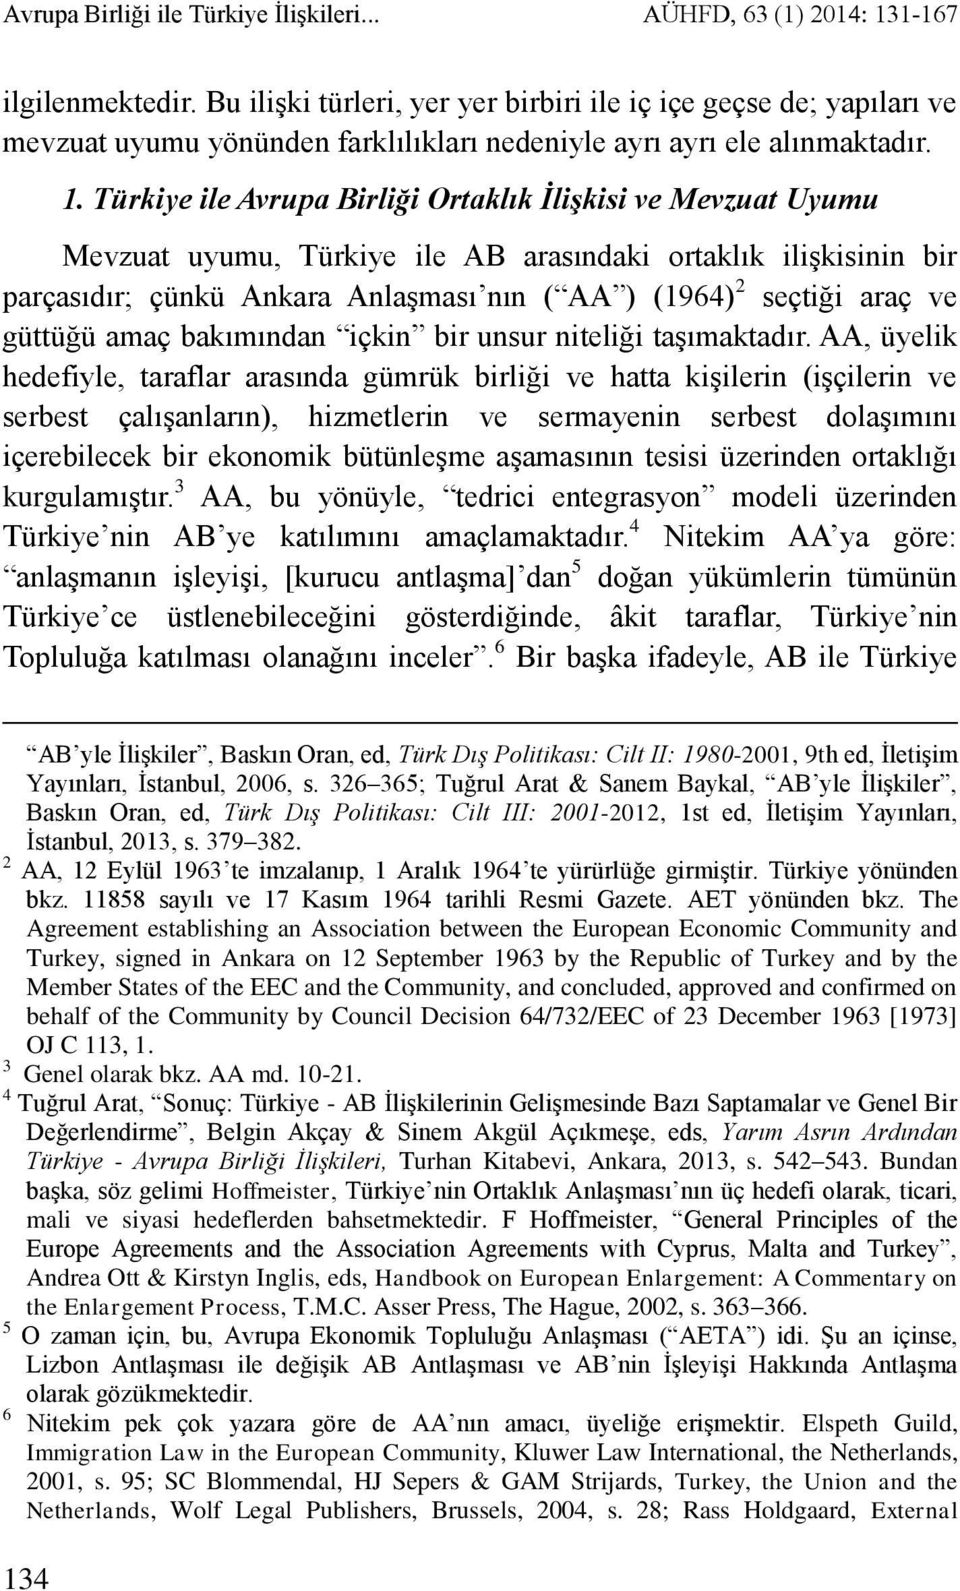 Türkiye ile Avrupa Birliği Ortaklık İlişkisi ve Mevzuat Uyumu Mevzuat uyumu, Türkiye ile AB arasındaki ortaklık ilişkisinin bir parçasıdır; çünkü Ankara Anlaşması nın ( AA ) (1964) 2 seçtiği araç ve